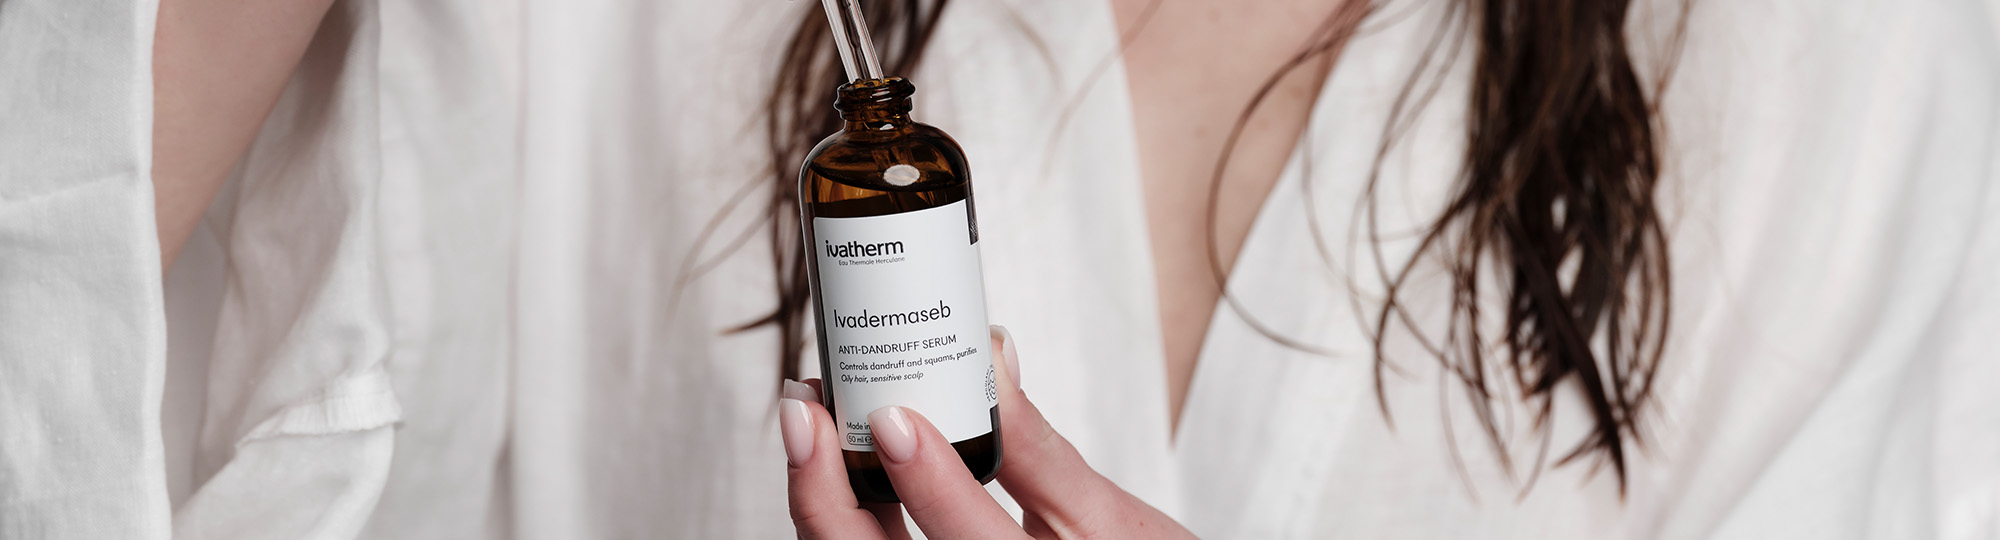 Scapă de mătreață și bucură-te de un scalp sănătos, cu Ivadermaseb Serum, un nou produs Ivatherm!